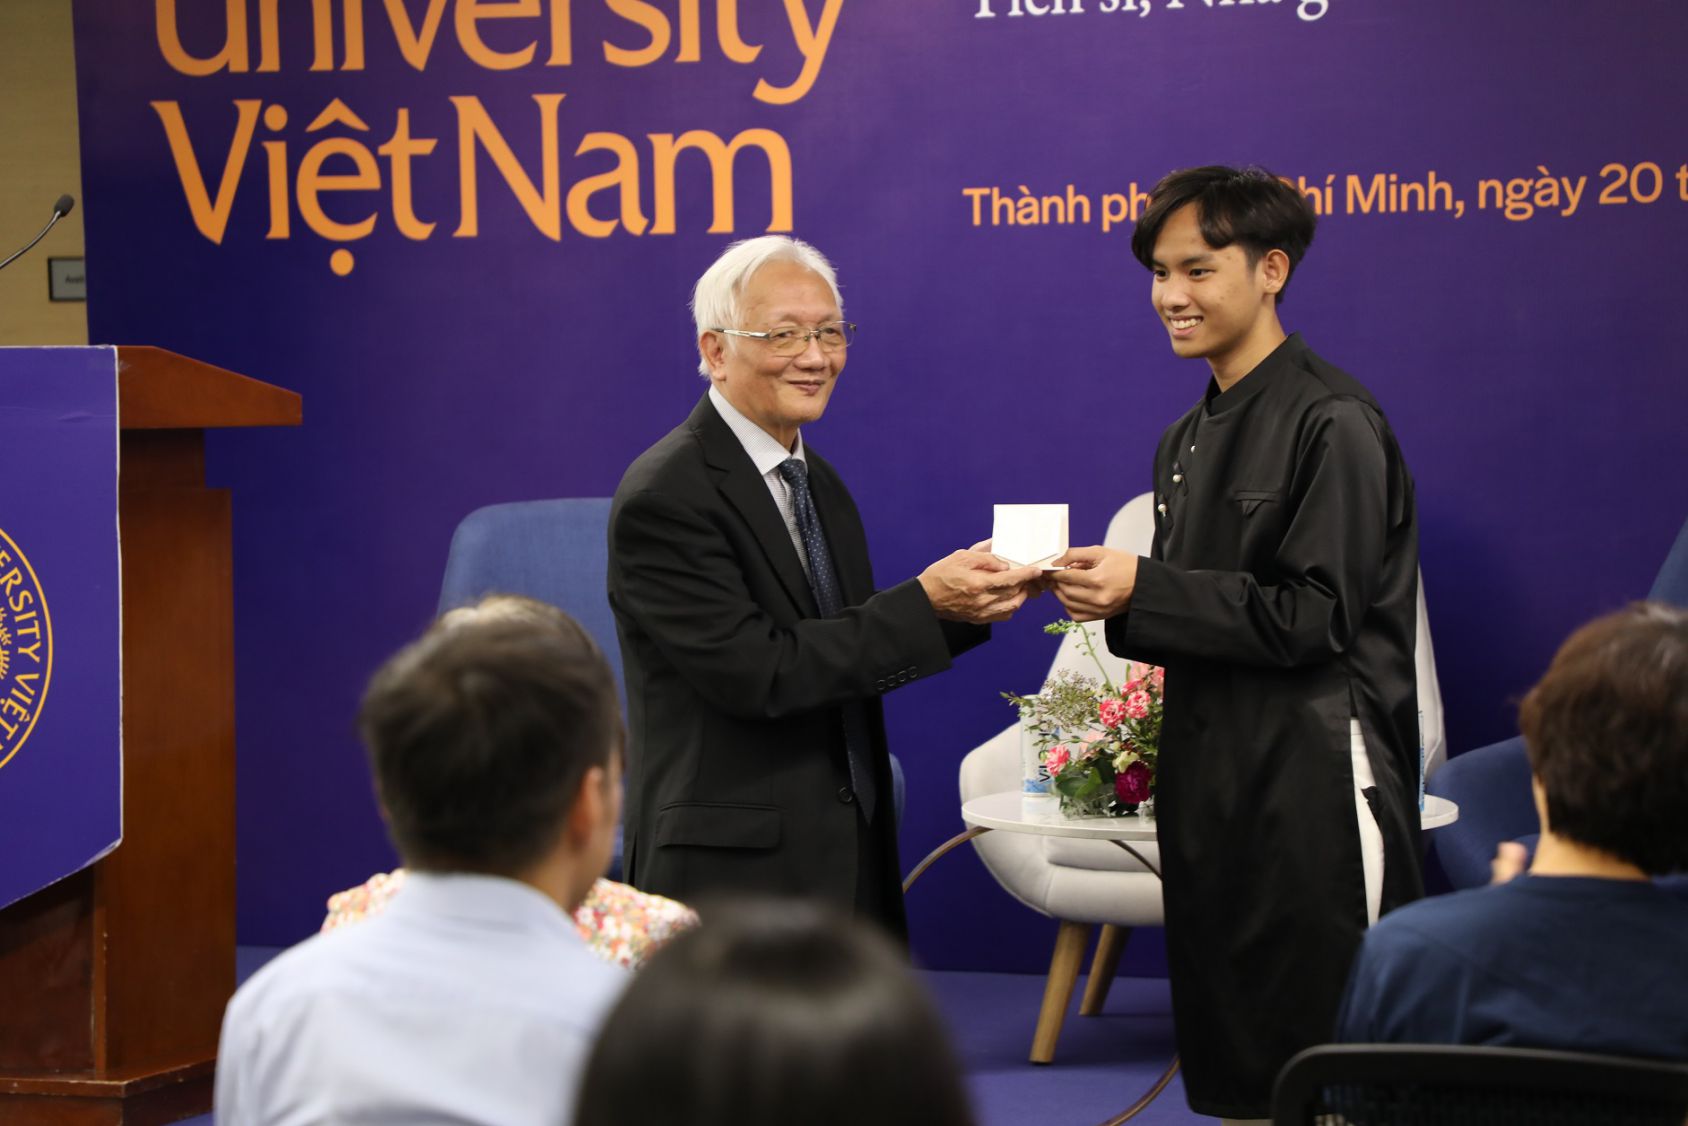 Tiến sĩ Nguyễn Tùng Lâm trao học bổng cho sinh viên có nỗ lực trong học tập. Ảnh: Nhân vật cung cấp